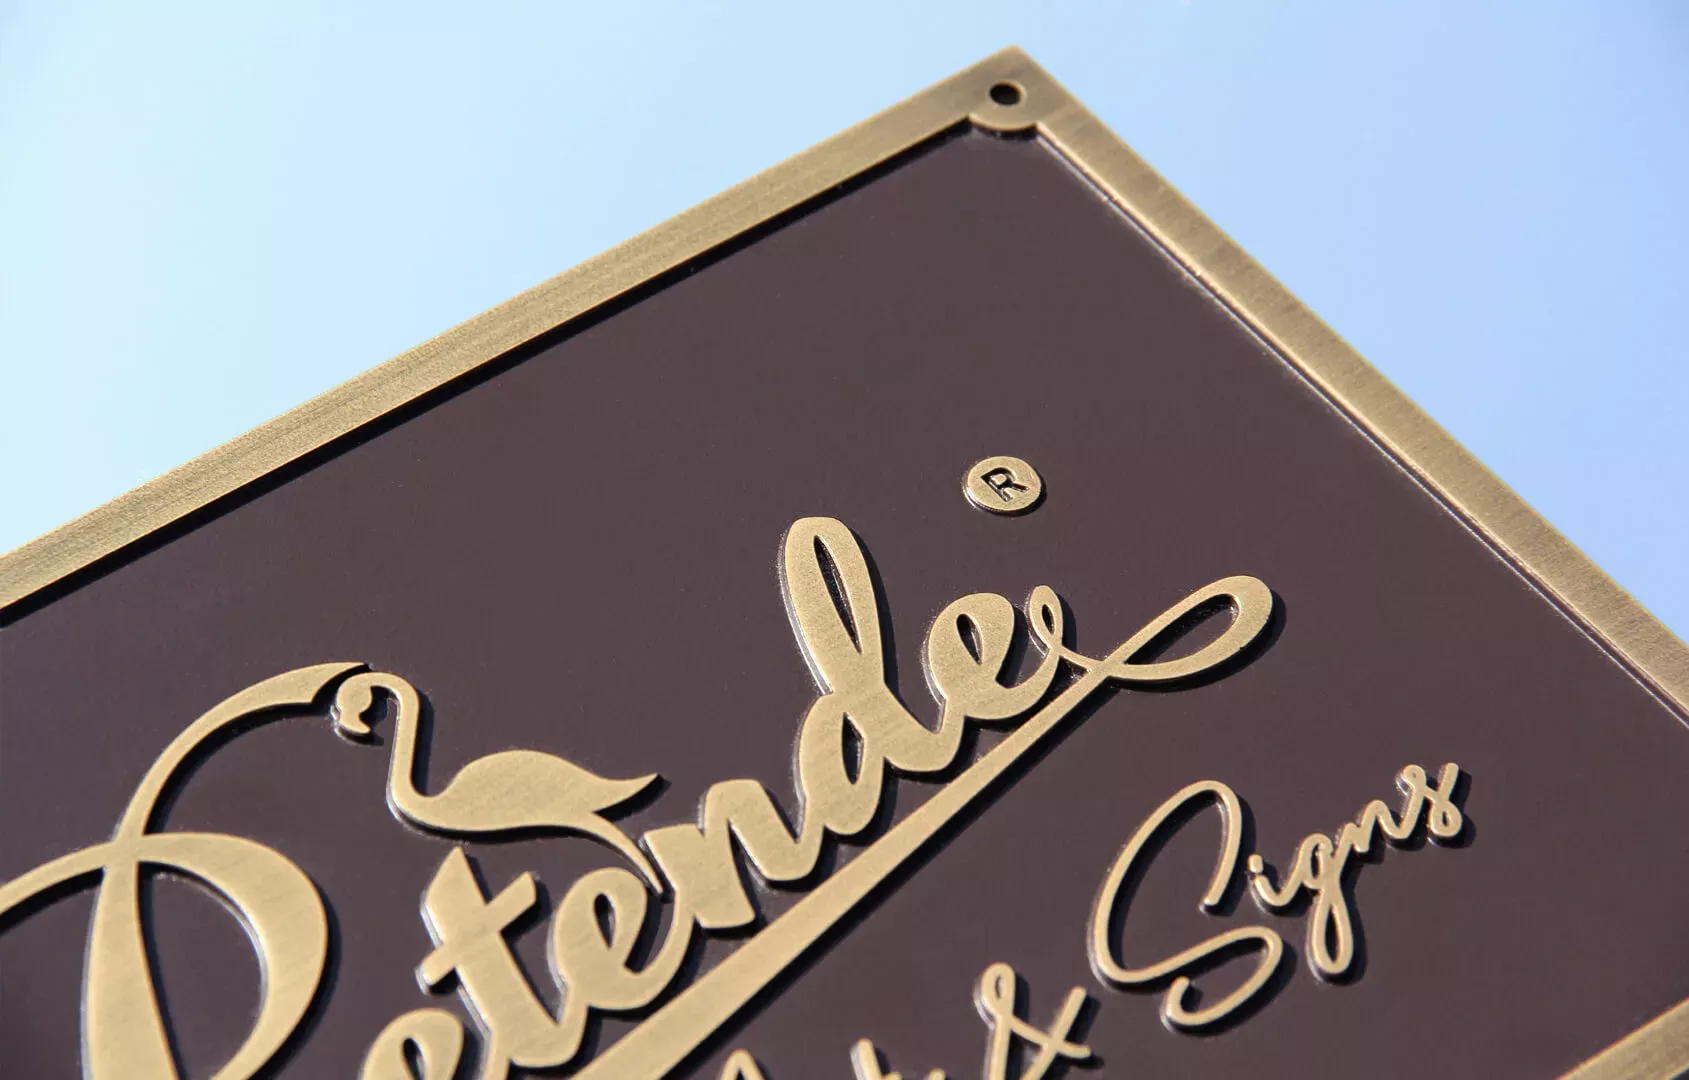 Gussplakette Pretende - 3D-Plakette aus Bronzeguss mit Pretende-Logo